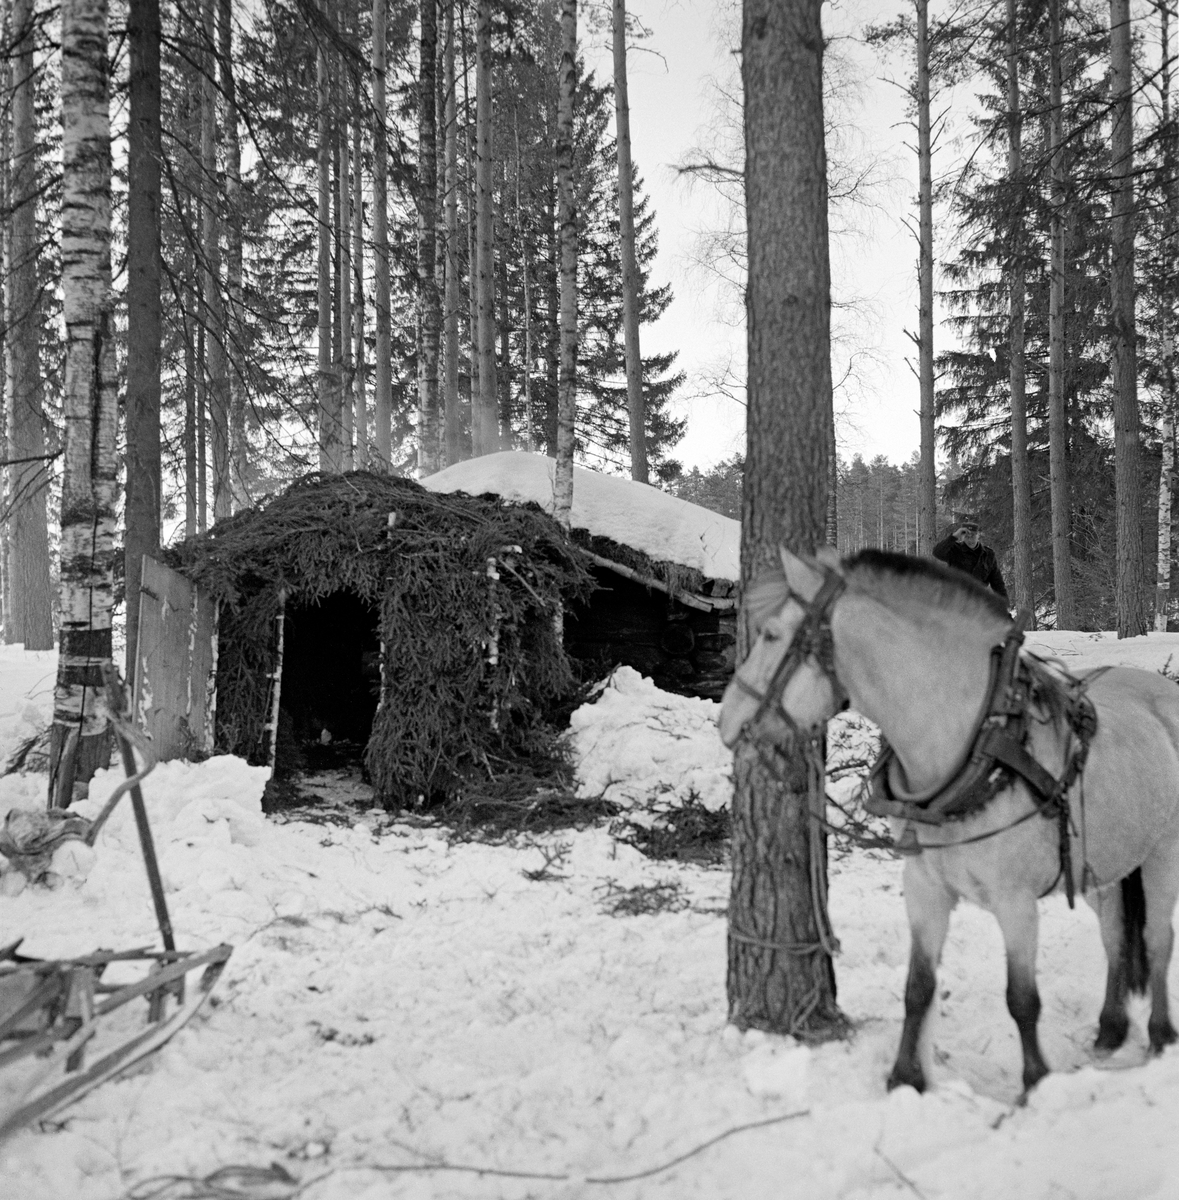 Bygging av barstall utenfor Letjerndalskoia i Norsk Skogbruksmuseums friluftsmuseum på Prestøya i Elverum.  Fotografiet er tatt i forbindelse med opptakene til dokumentarfilmen «Liv og husvær i Skogen» vinteren 1962.  Barstallen ble bygd inntil koiegavlen, på et skjellett av tynne bjørke og granrajer, og med et forholdsvis flatt saltak, som i likhet med sideveggene var kledd med granbar.  Det fantes en døråpning, og ved siden av denne sto en lem, som skulle brukes som dør.  I forgrunnen til venstre ser vi framparten av en skikjelke som ble brukt til å vise manuell tømmerlunning i den nevnte filmen.  Til høyre i forgrunnen sto en fjording, som også var aktør i filmen, bundet til en furulegg.